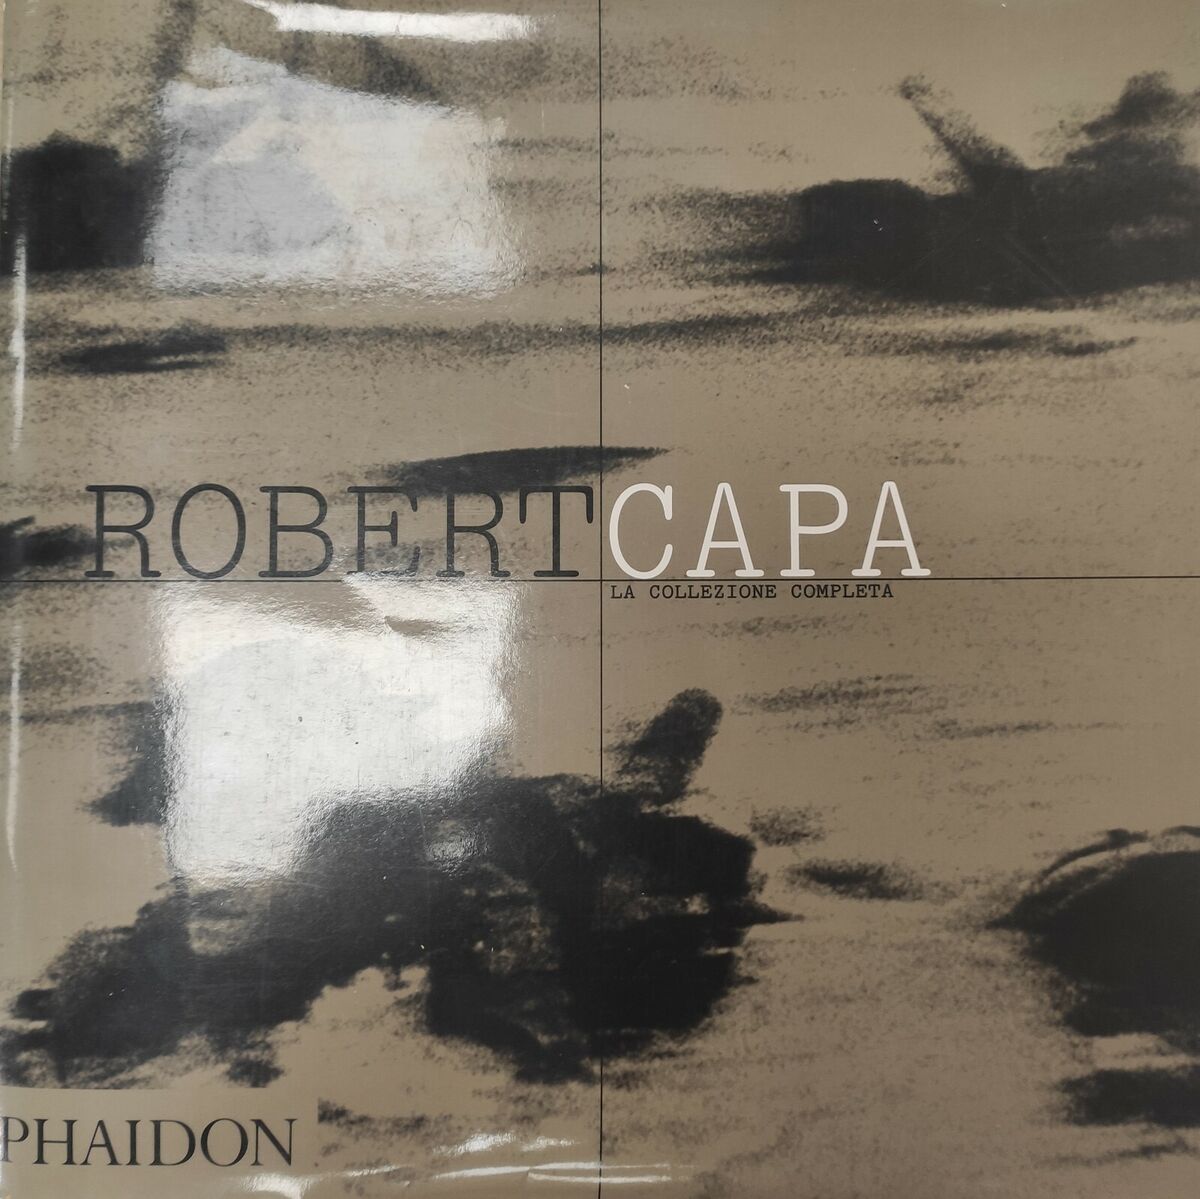 Libri di fotografia // “Collezione Completa” Robert Capa